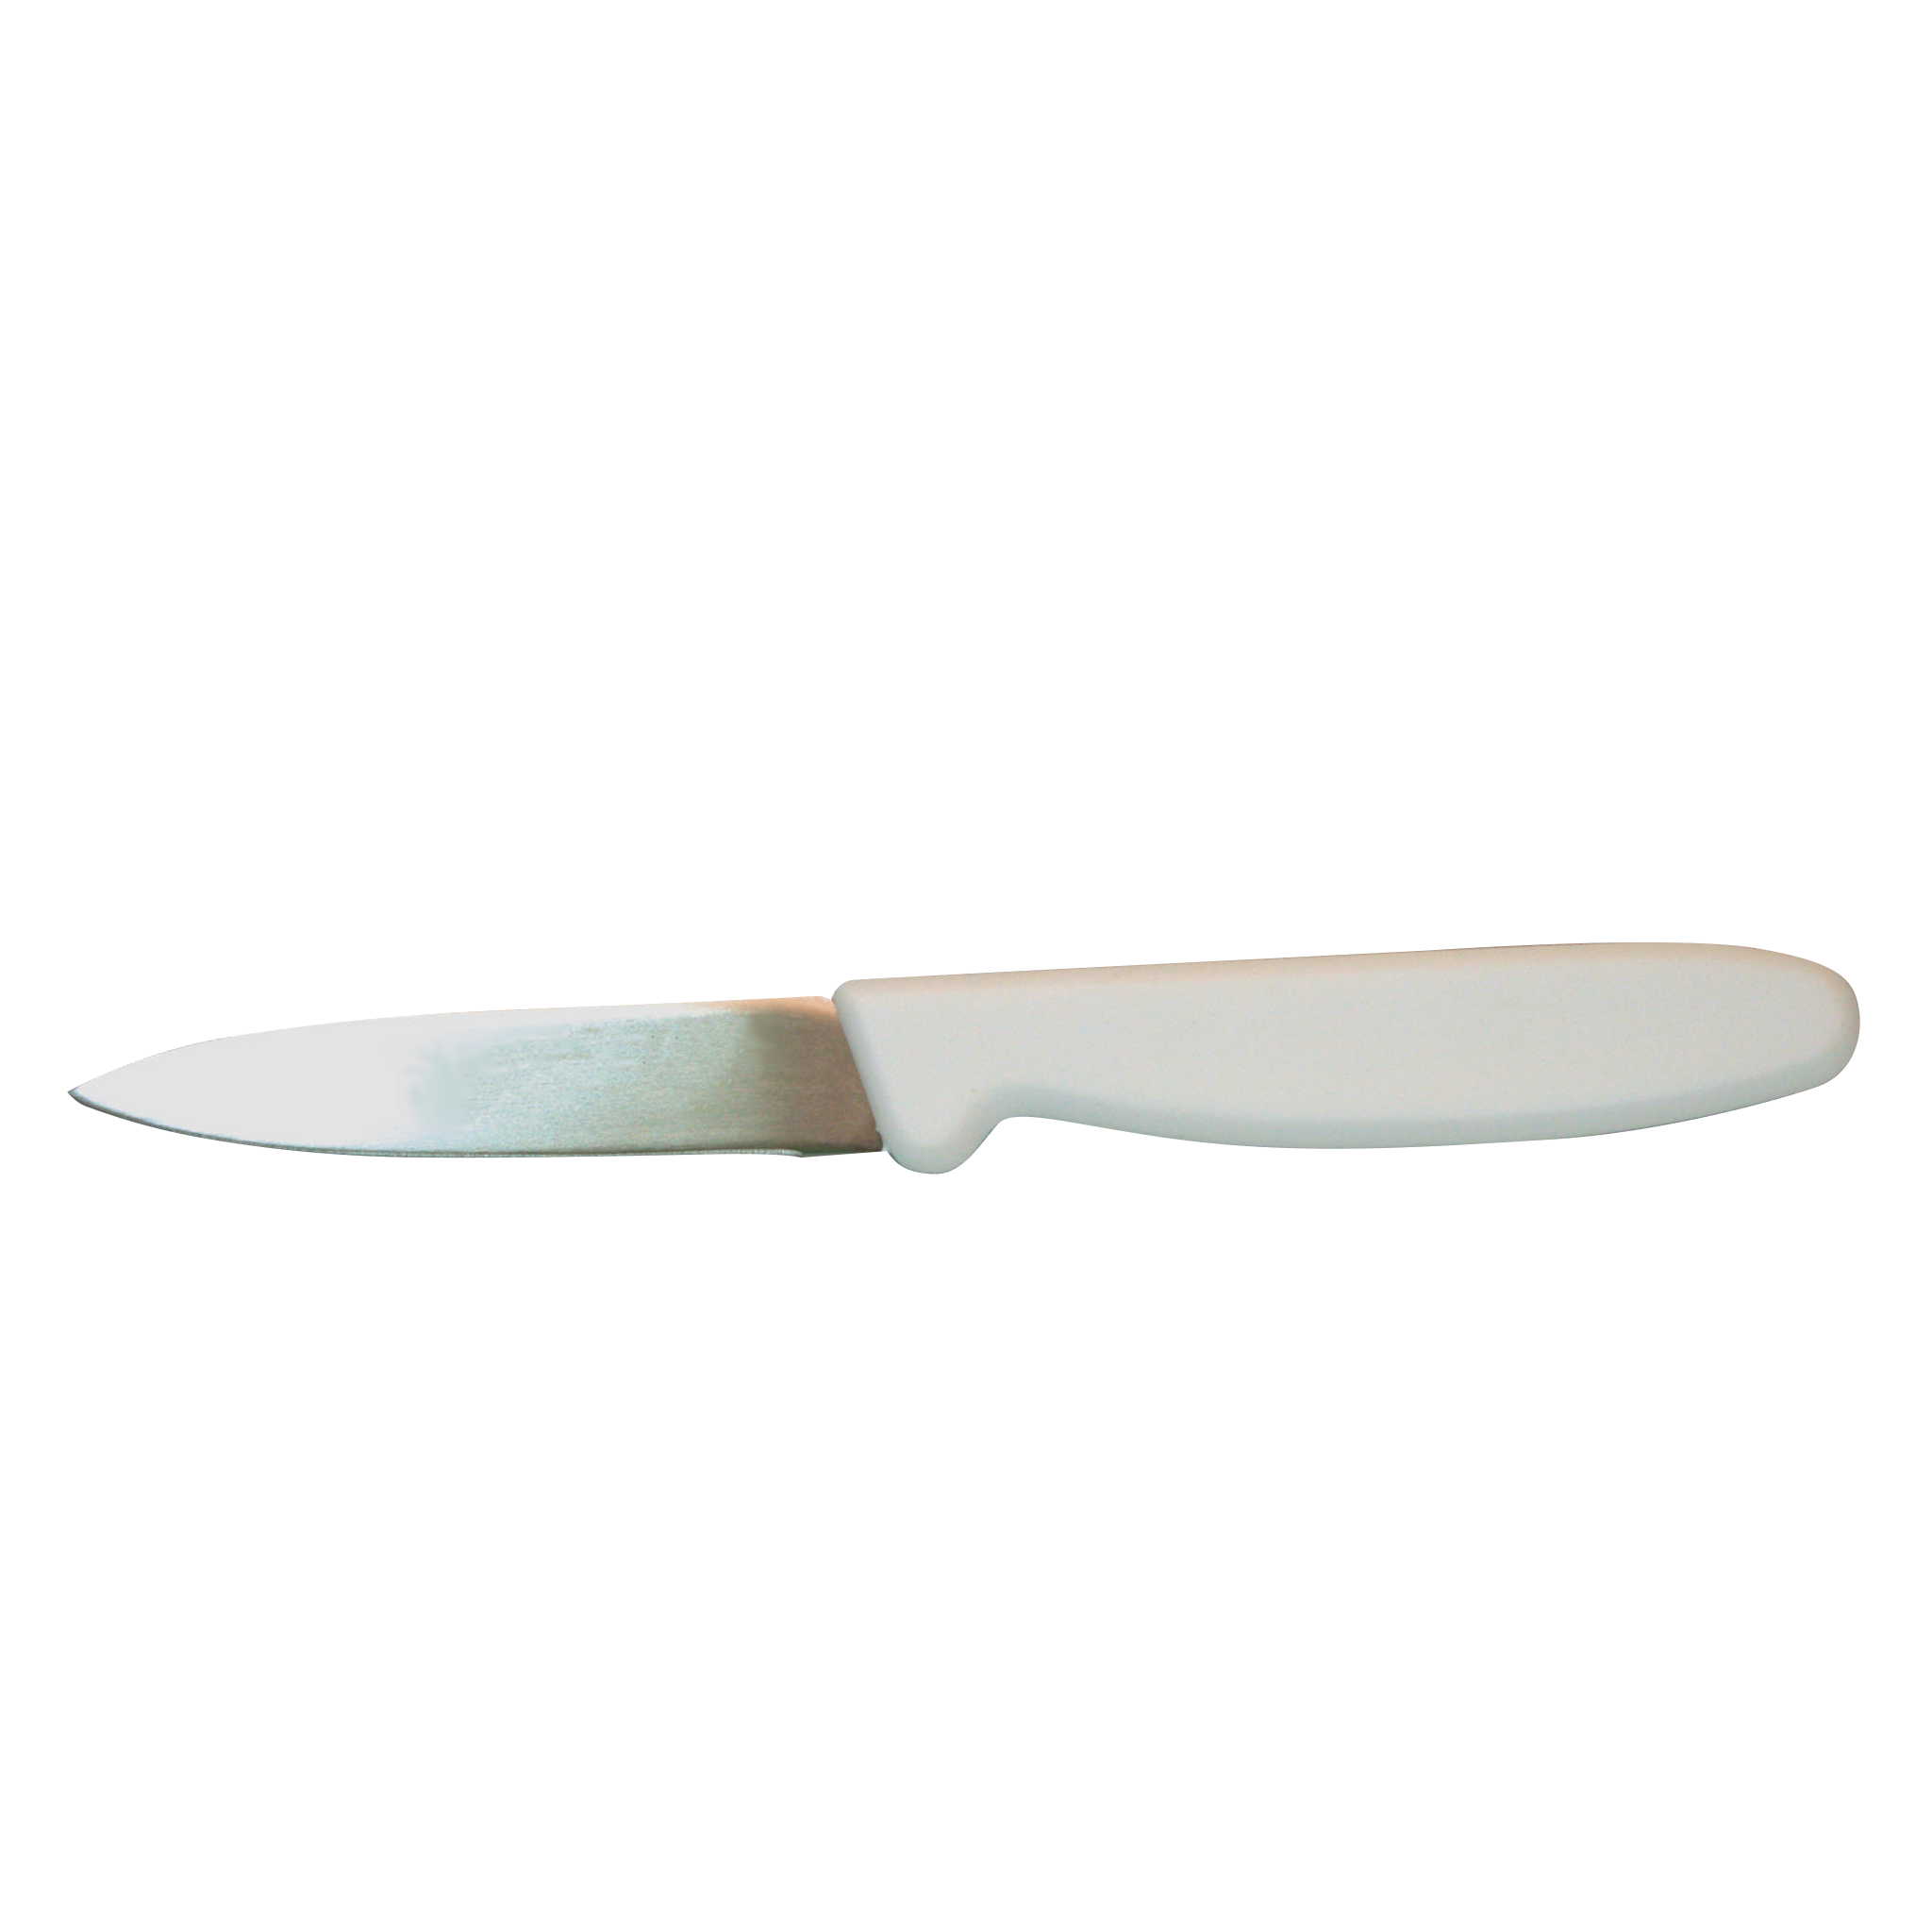 Dexter Knife